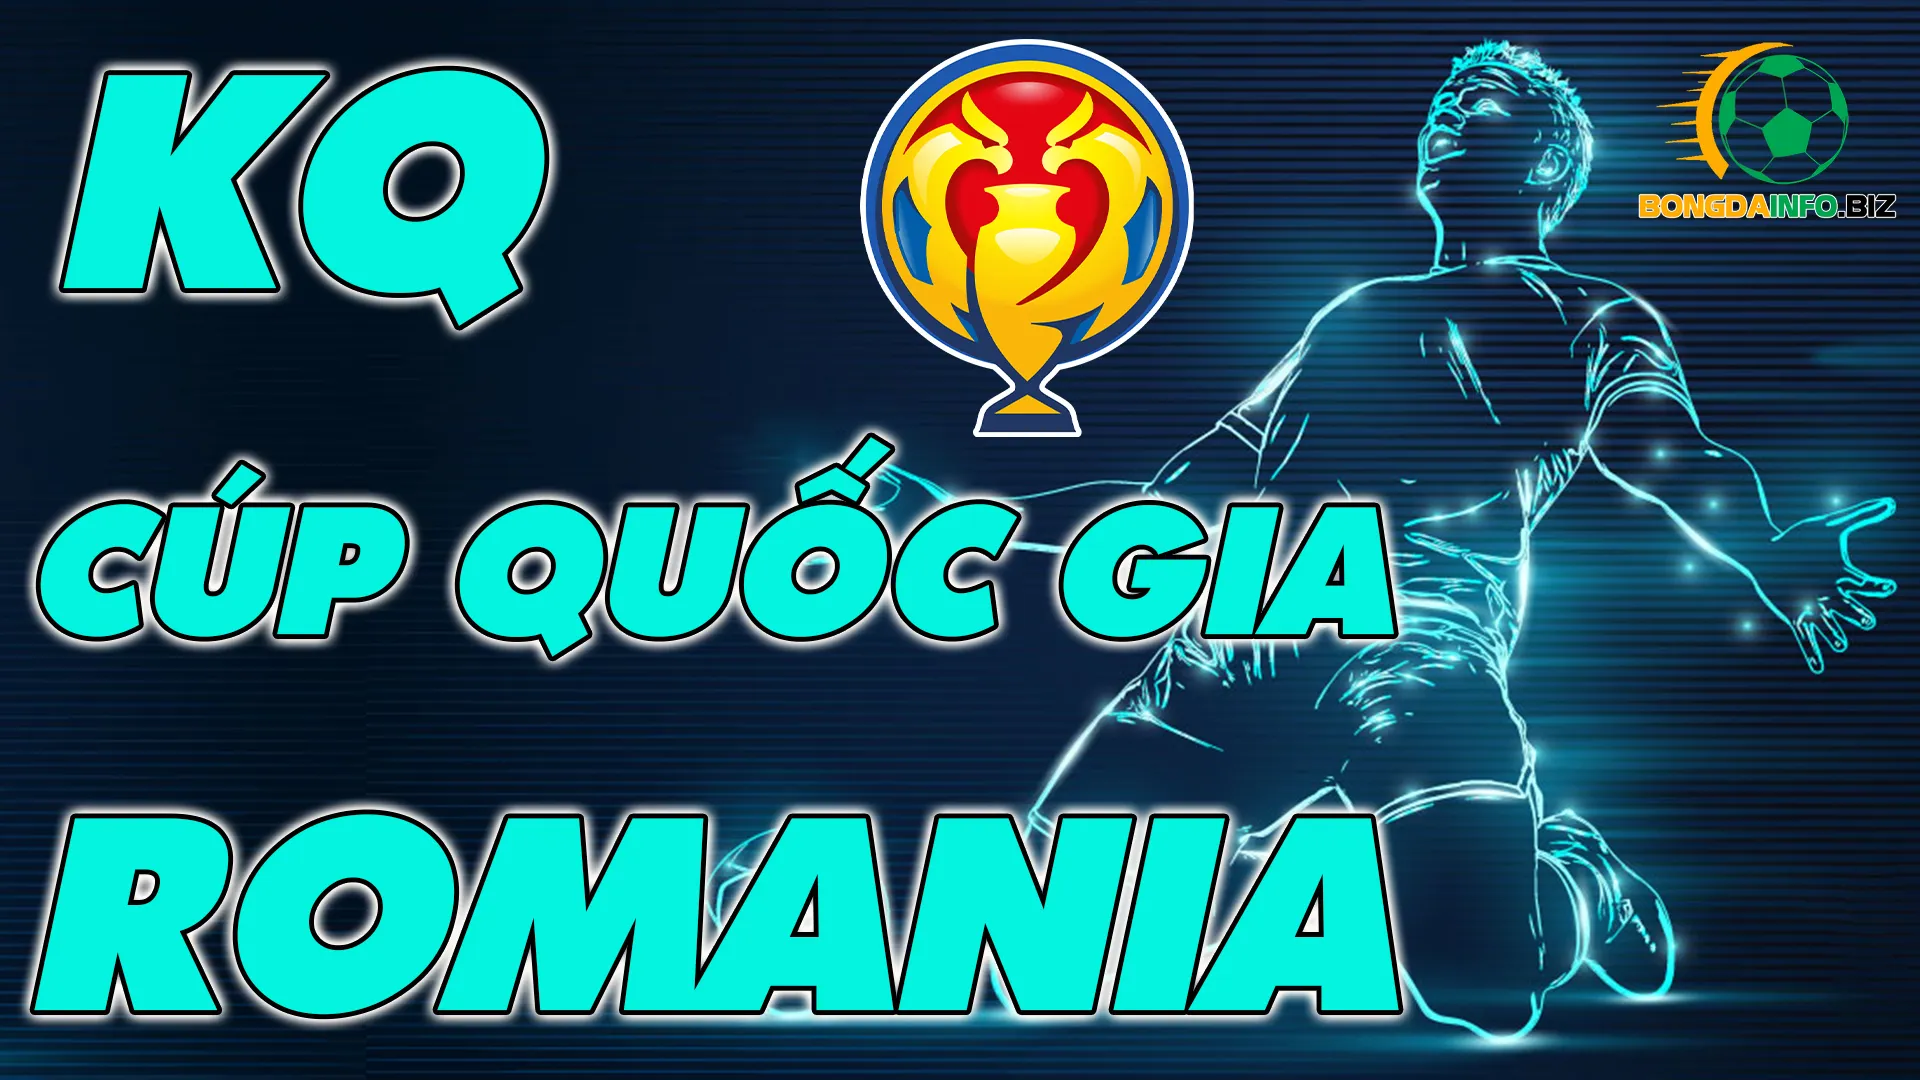 Kết quả cúp quốc gia Romania - Kqbd cúp quốc gia Romania hôm nay